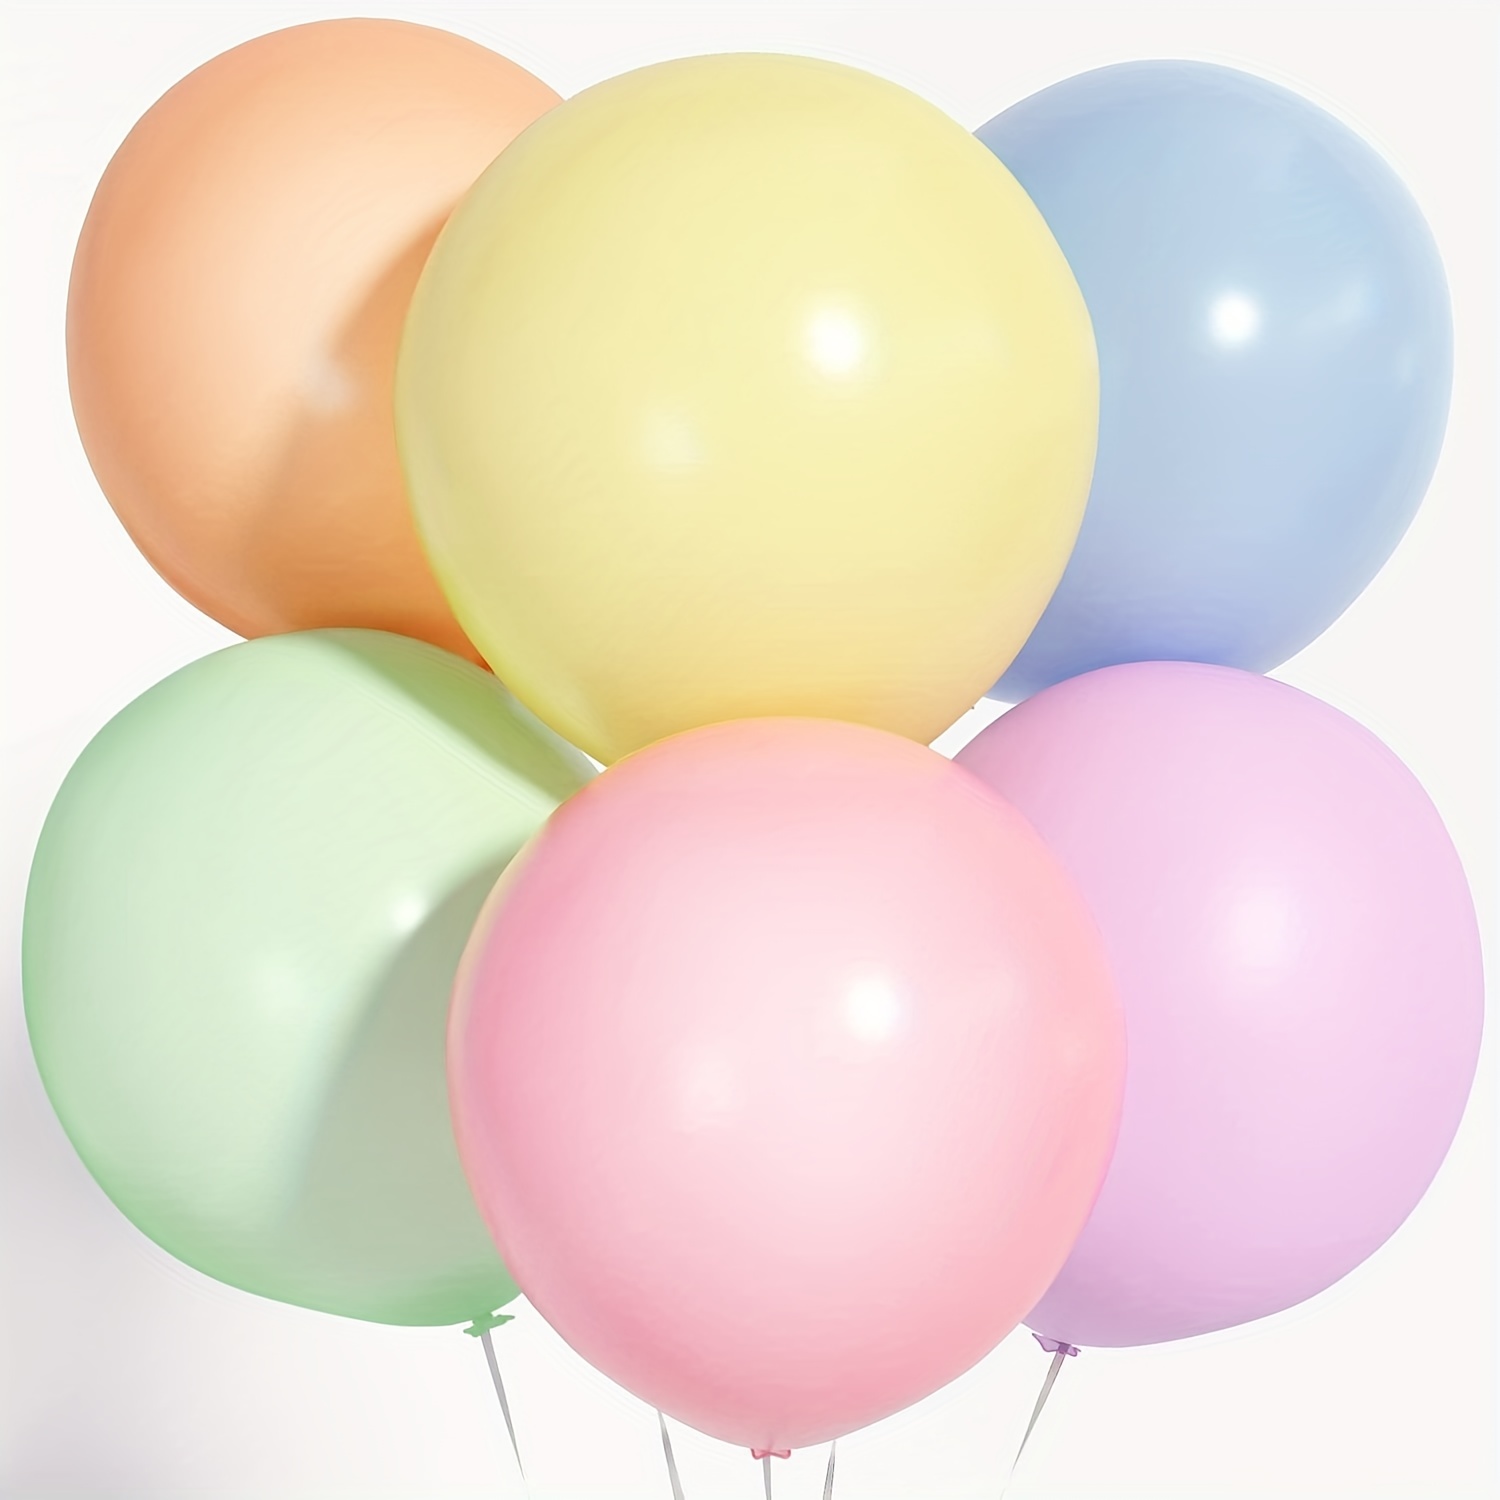 100 globos torcidos pastel de 260 globos largos para animales de globo,  colores pastel, globos mágicos de látex de alta calidad para decoración de